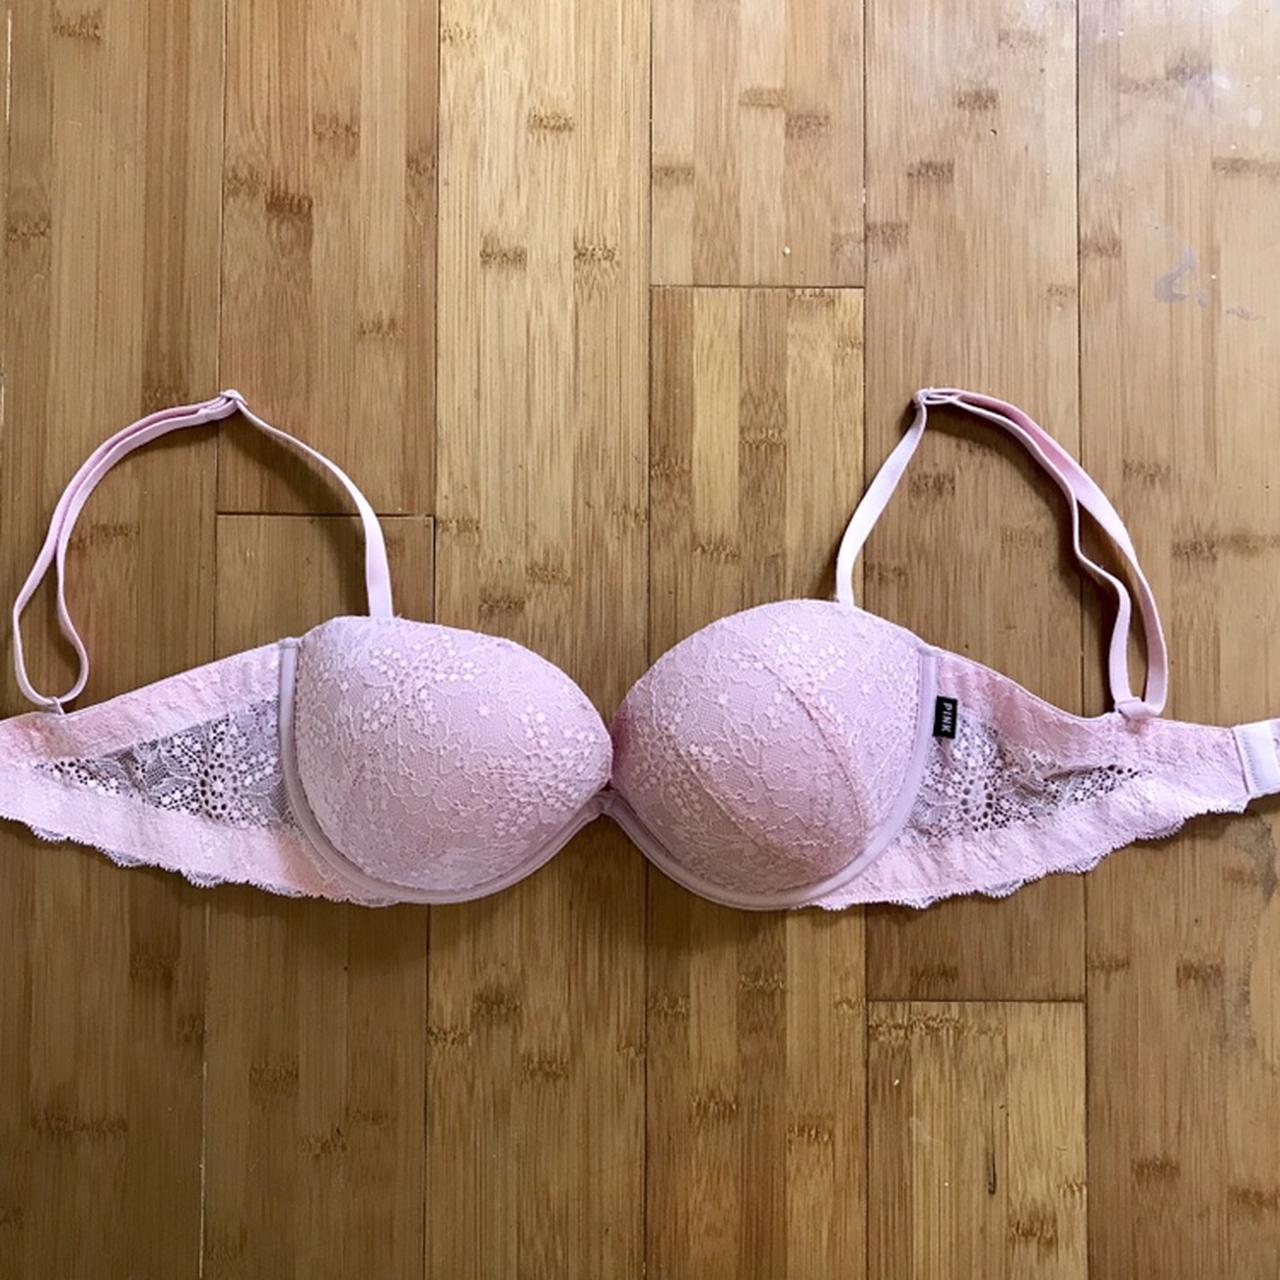 Victoria’s Secret pink Date Multi-way push up bra in